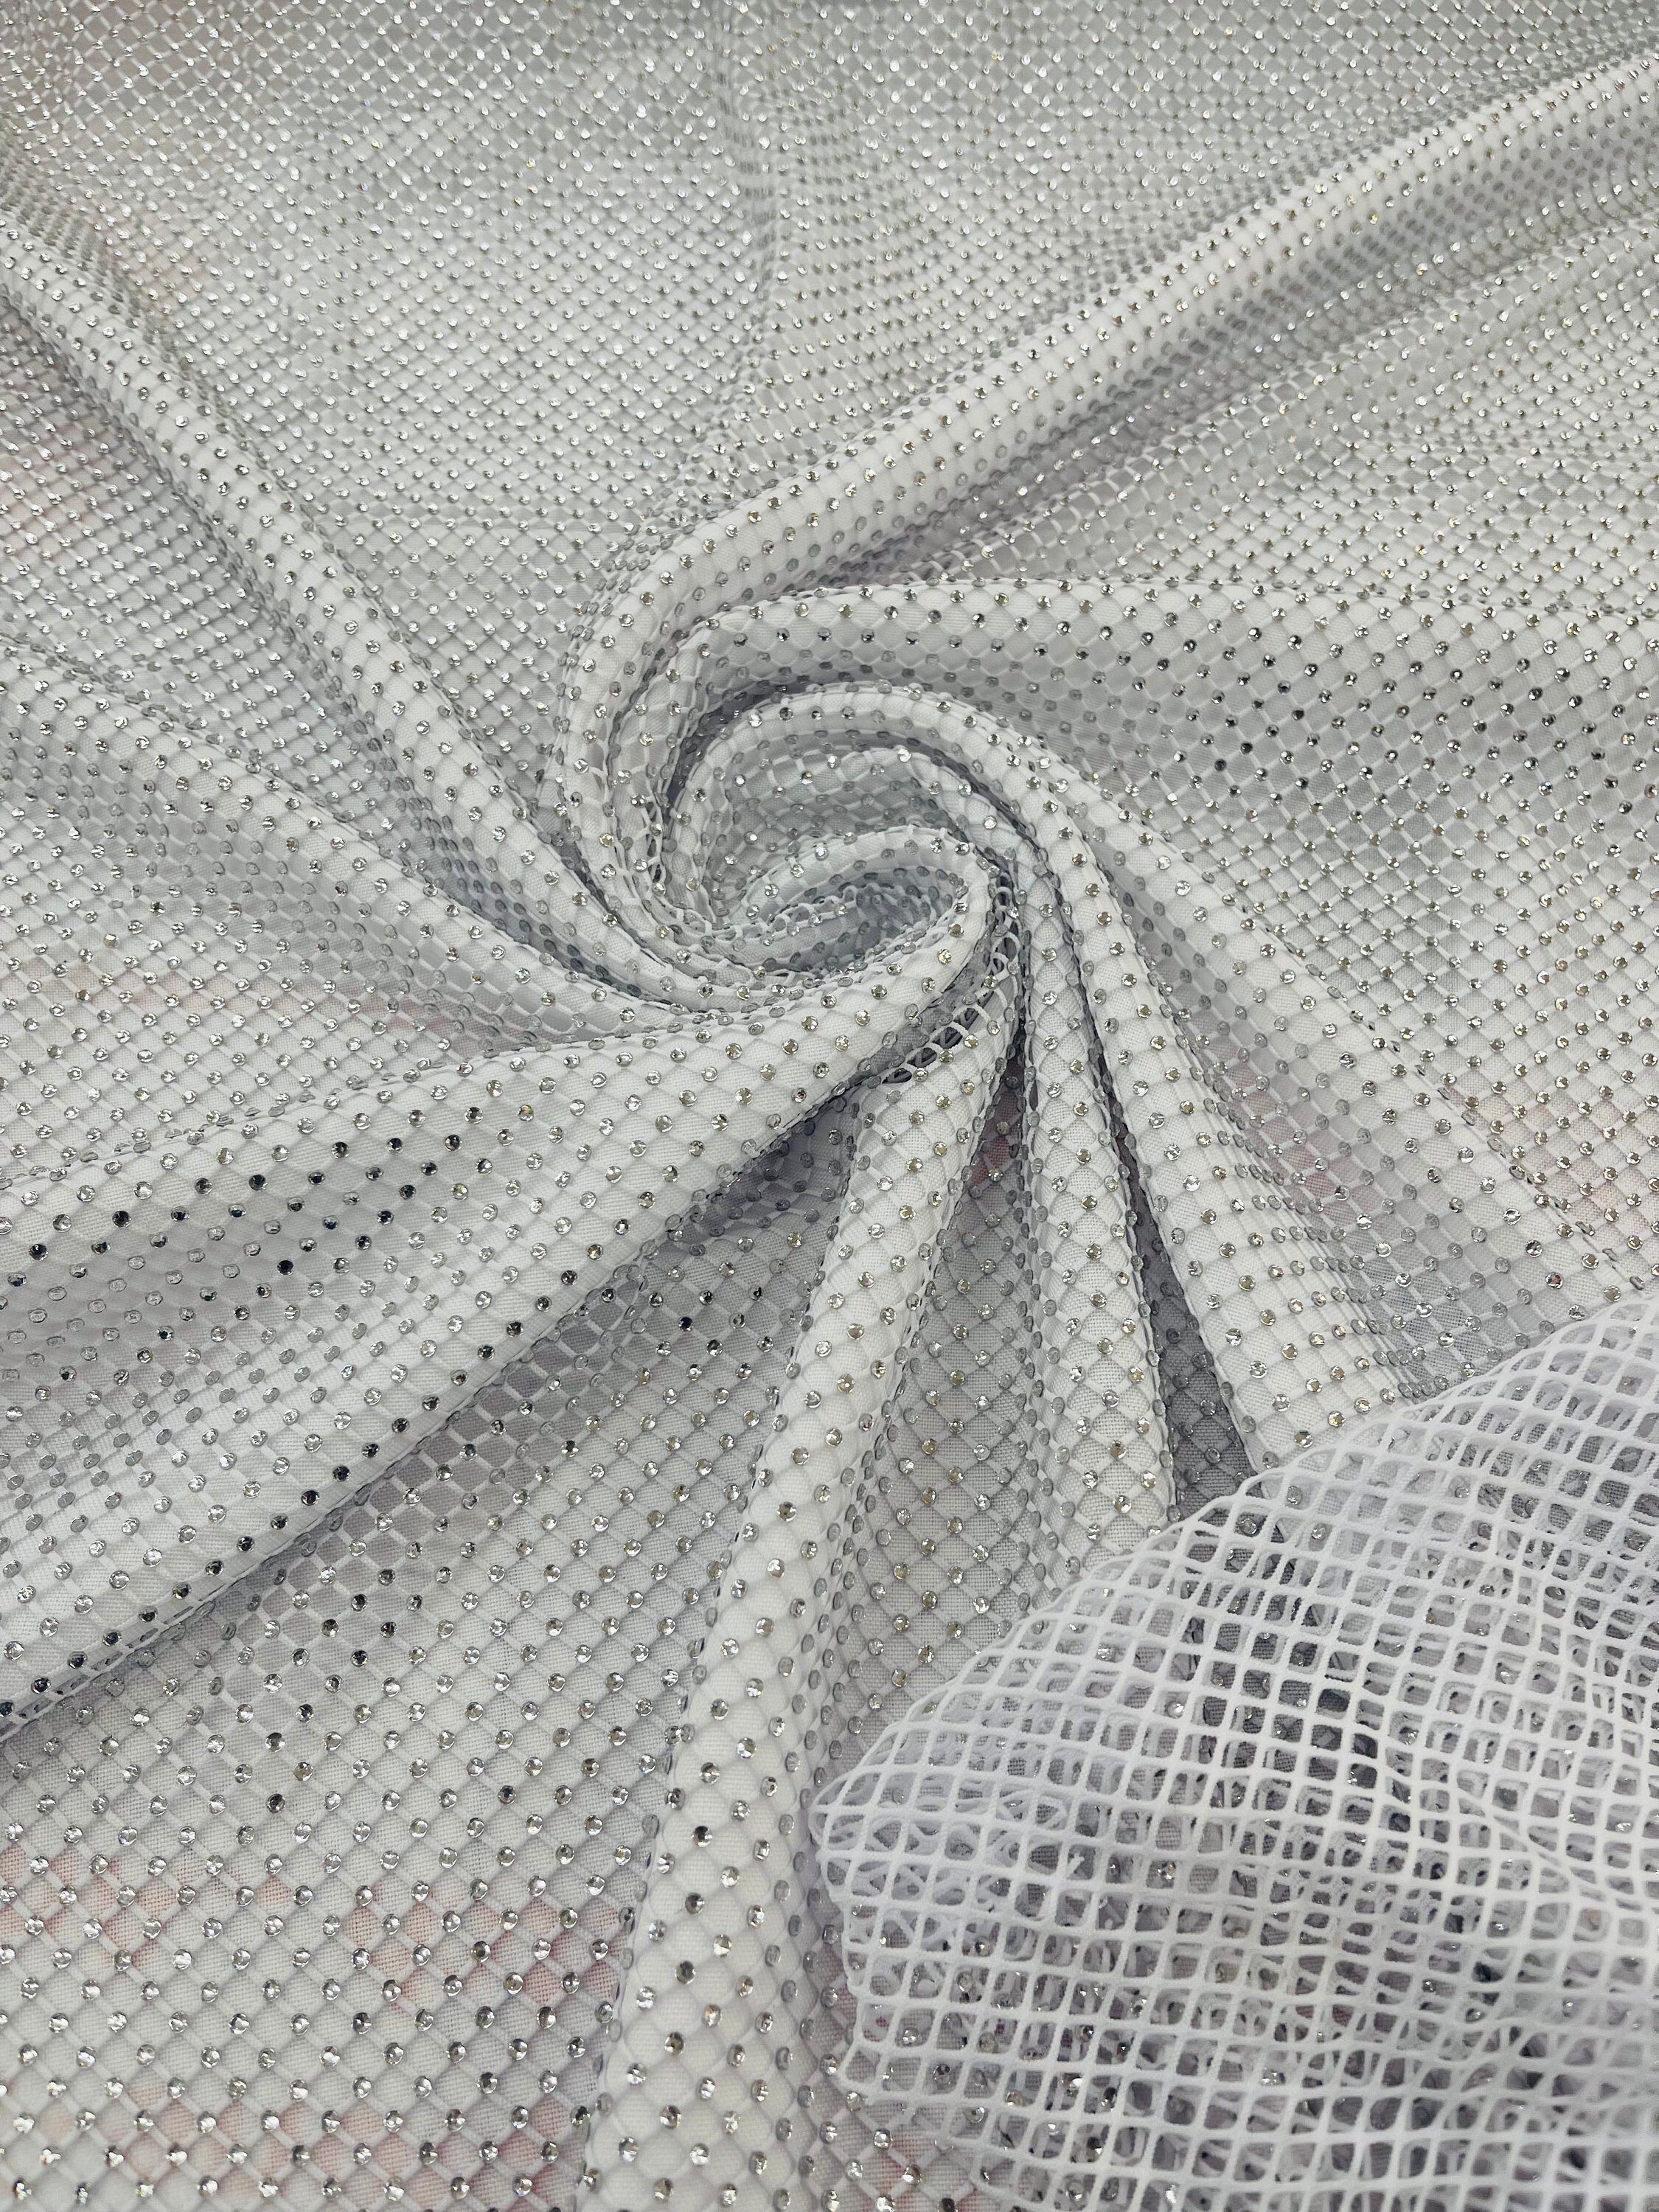 Fishnet Fabric -  Canada